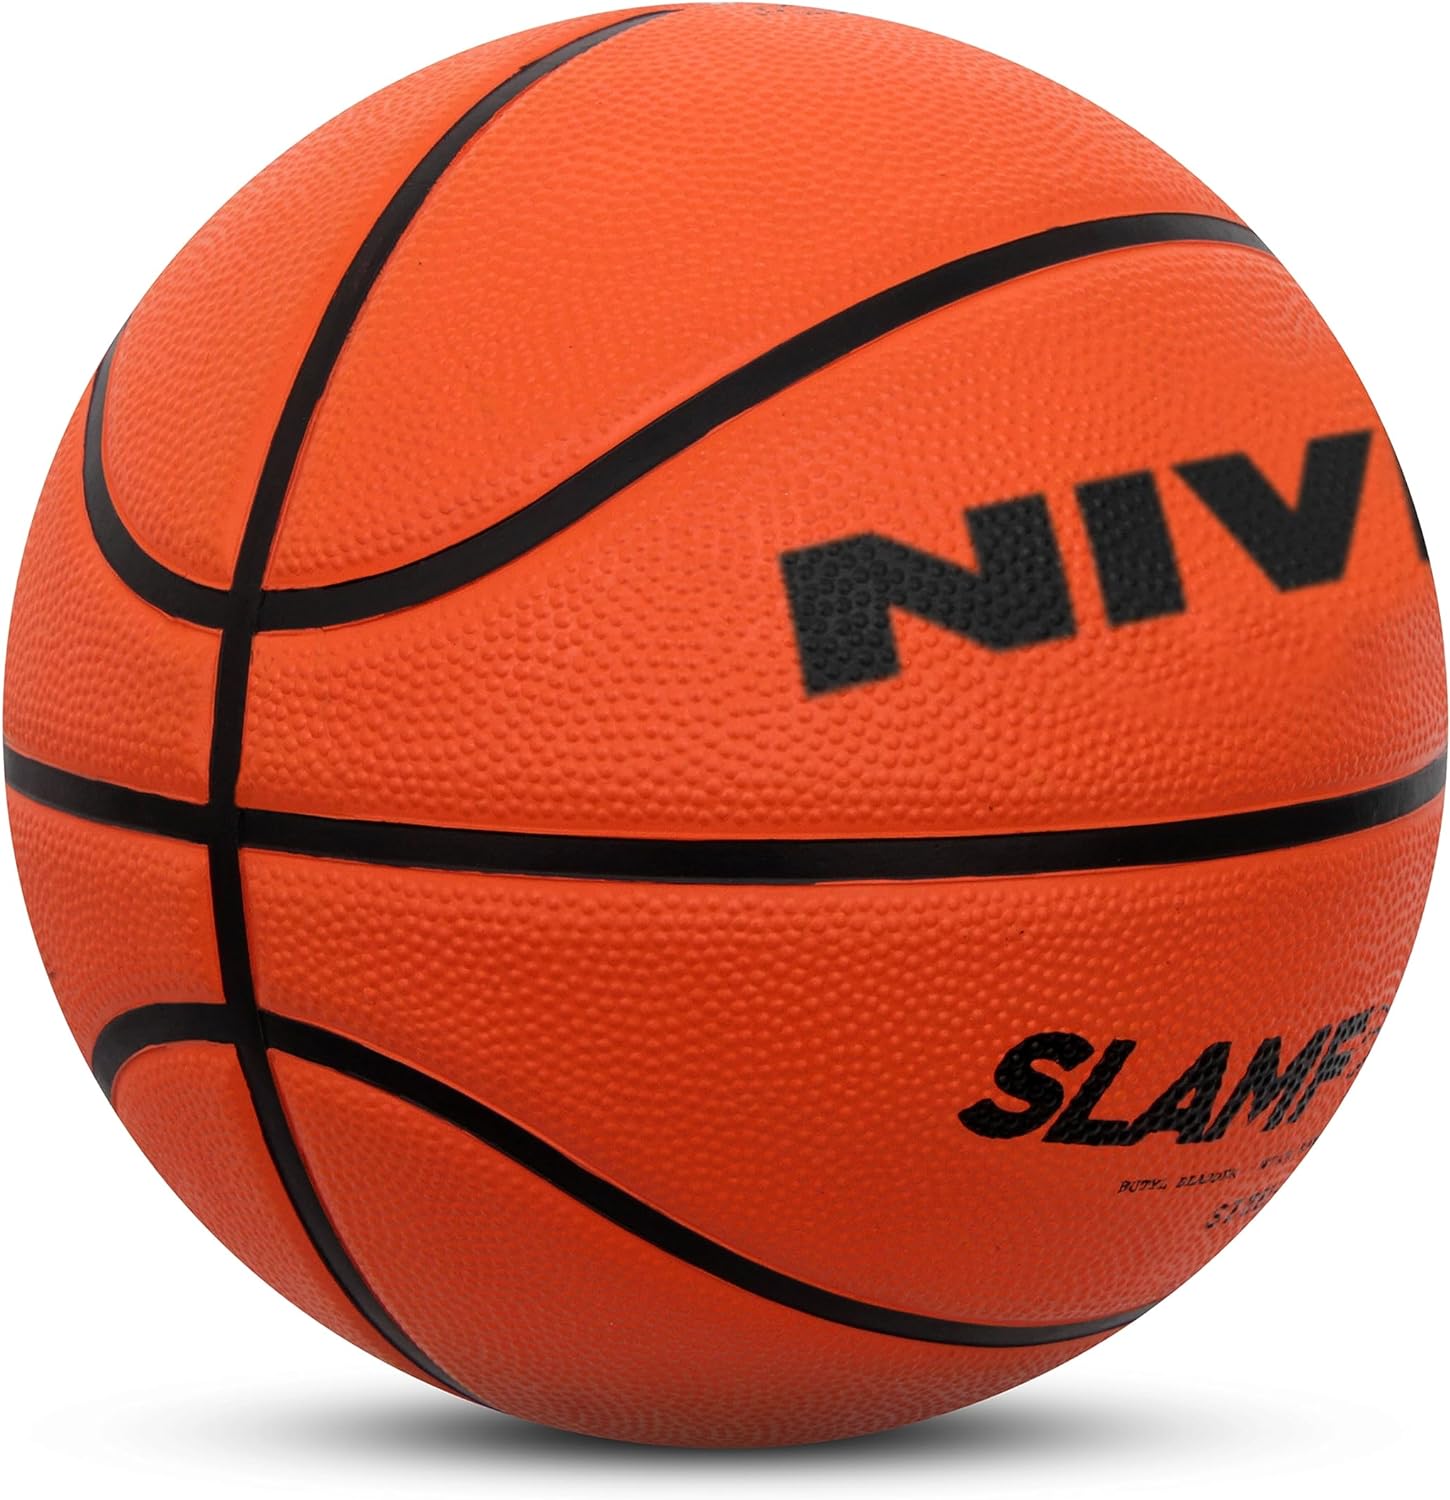 Nivia Encounter basketball Size-7